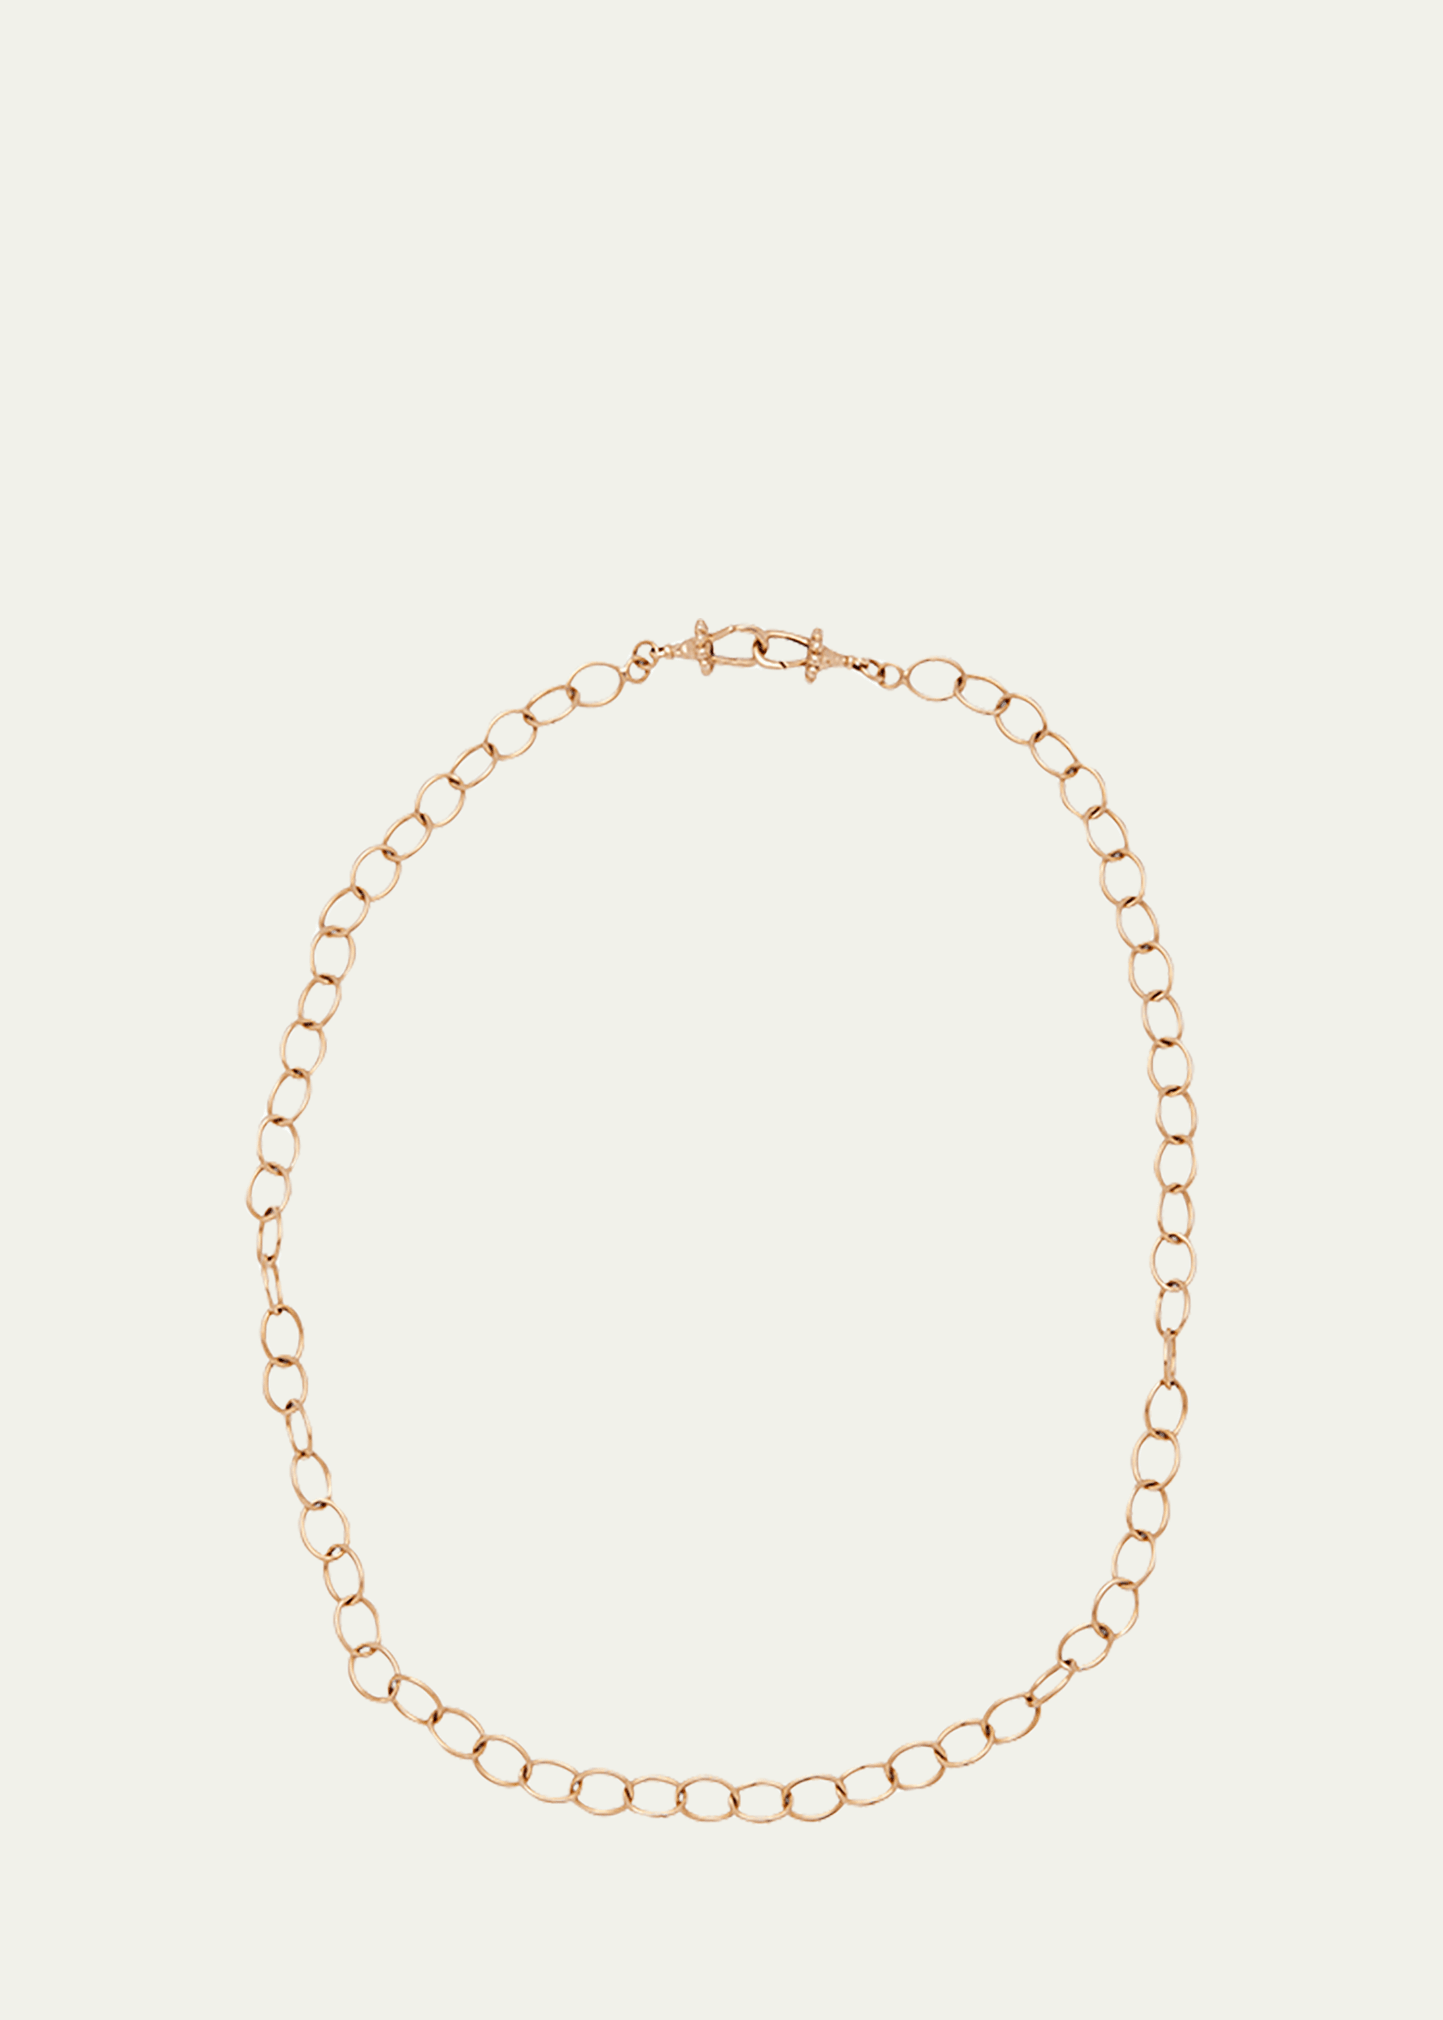 Marie Lichtenberg 18k Rose Gold Chain Necklace